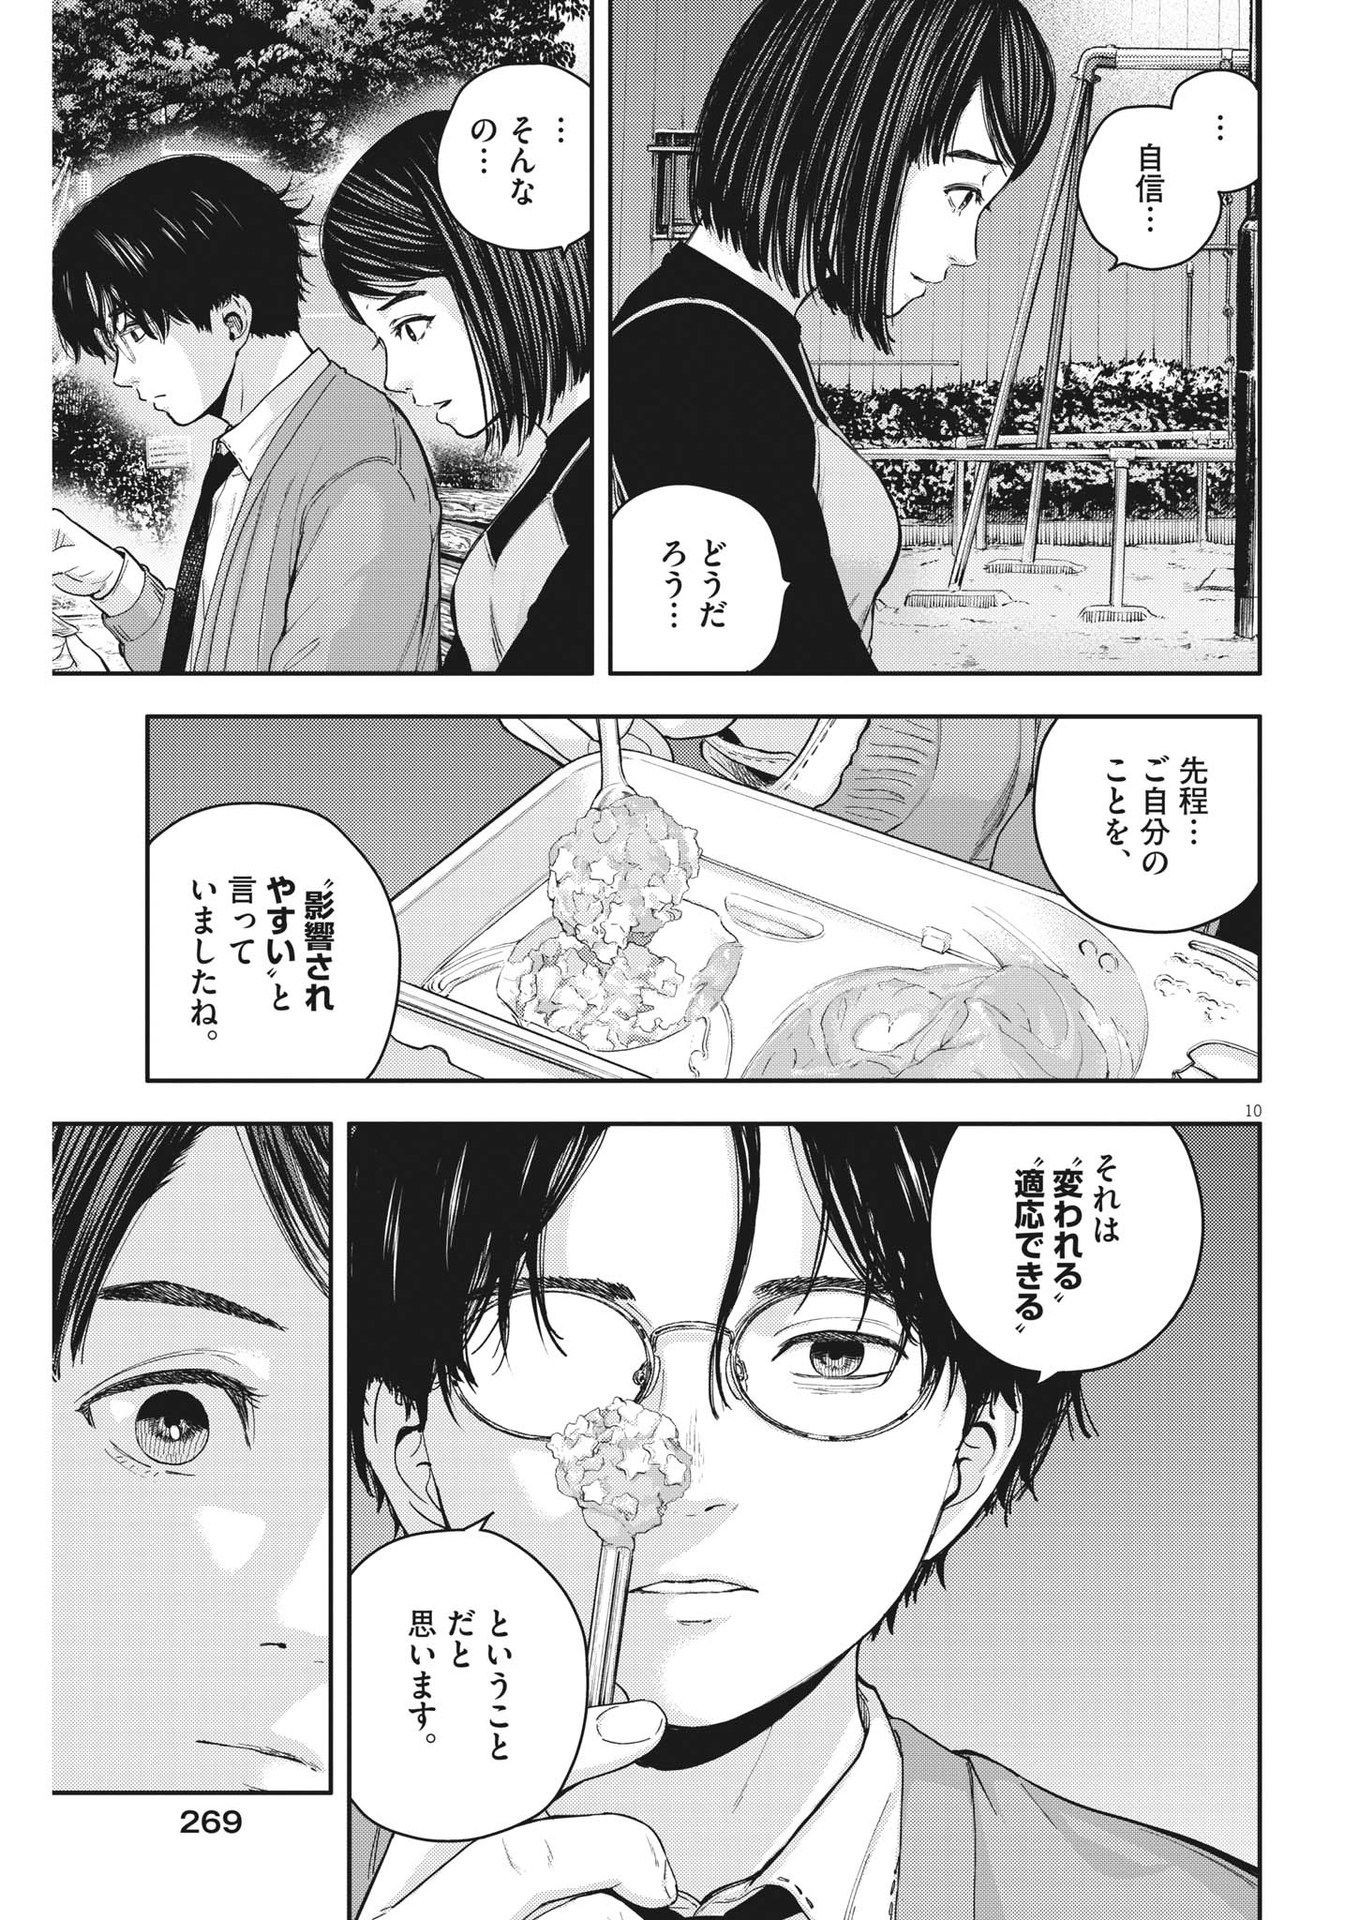 Yumenashi-sensei no Shinroshidou - Chapter 24 - Page 10